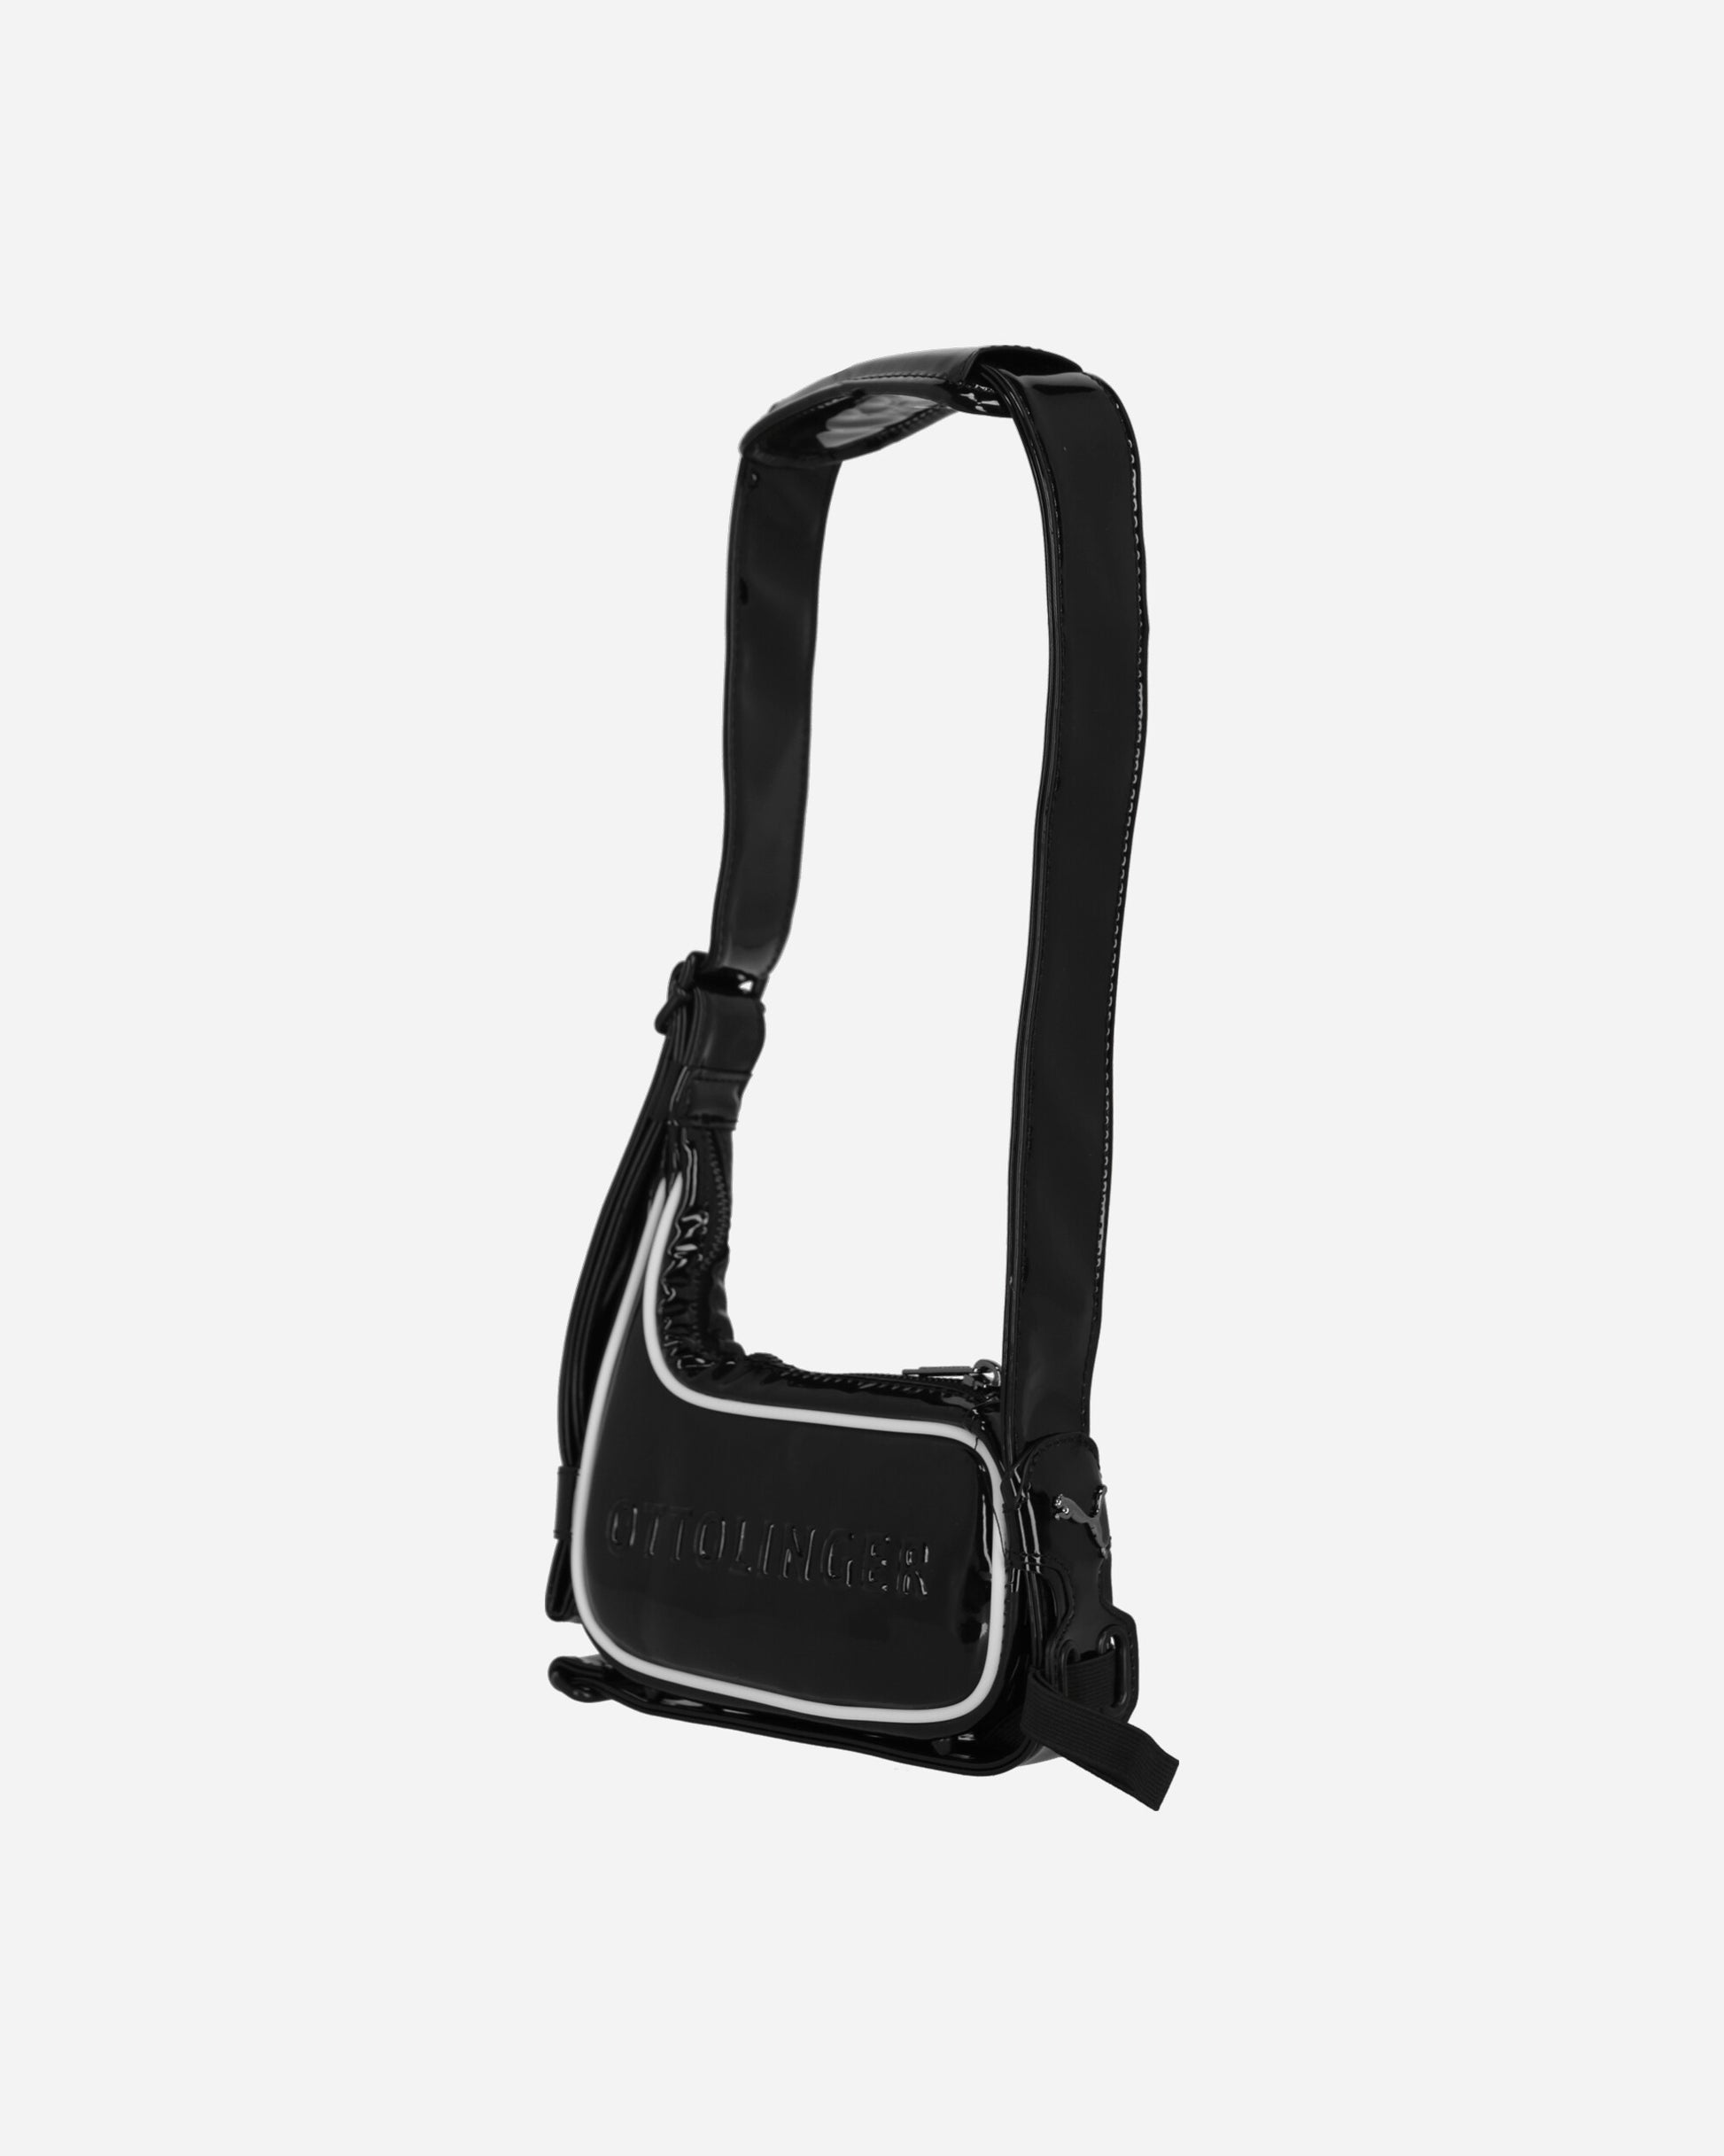 Ottolinger Wmns Puma X Ottolinger Small Bag Puma Black Publck Bags and Backpacks Shoulder Bags 090315  01